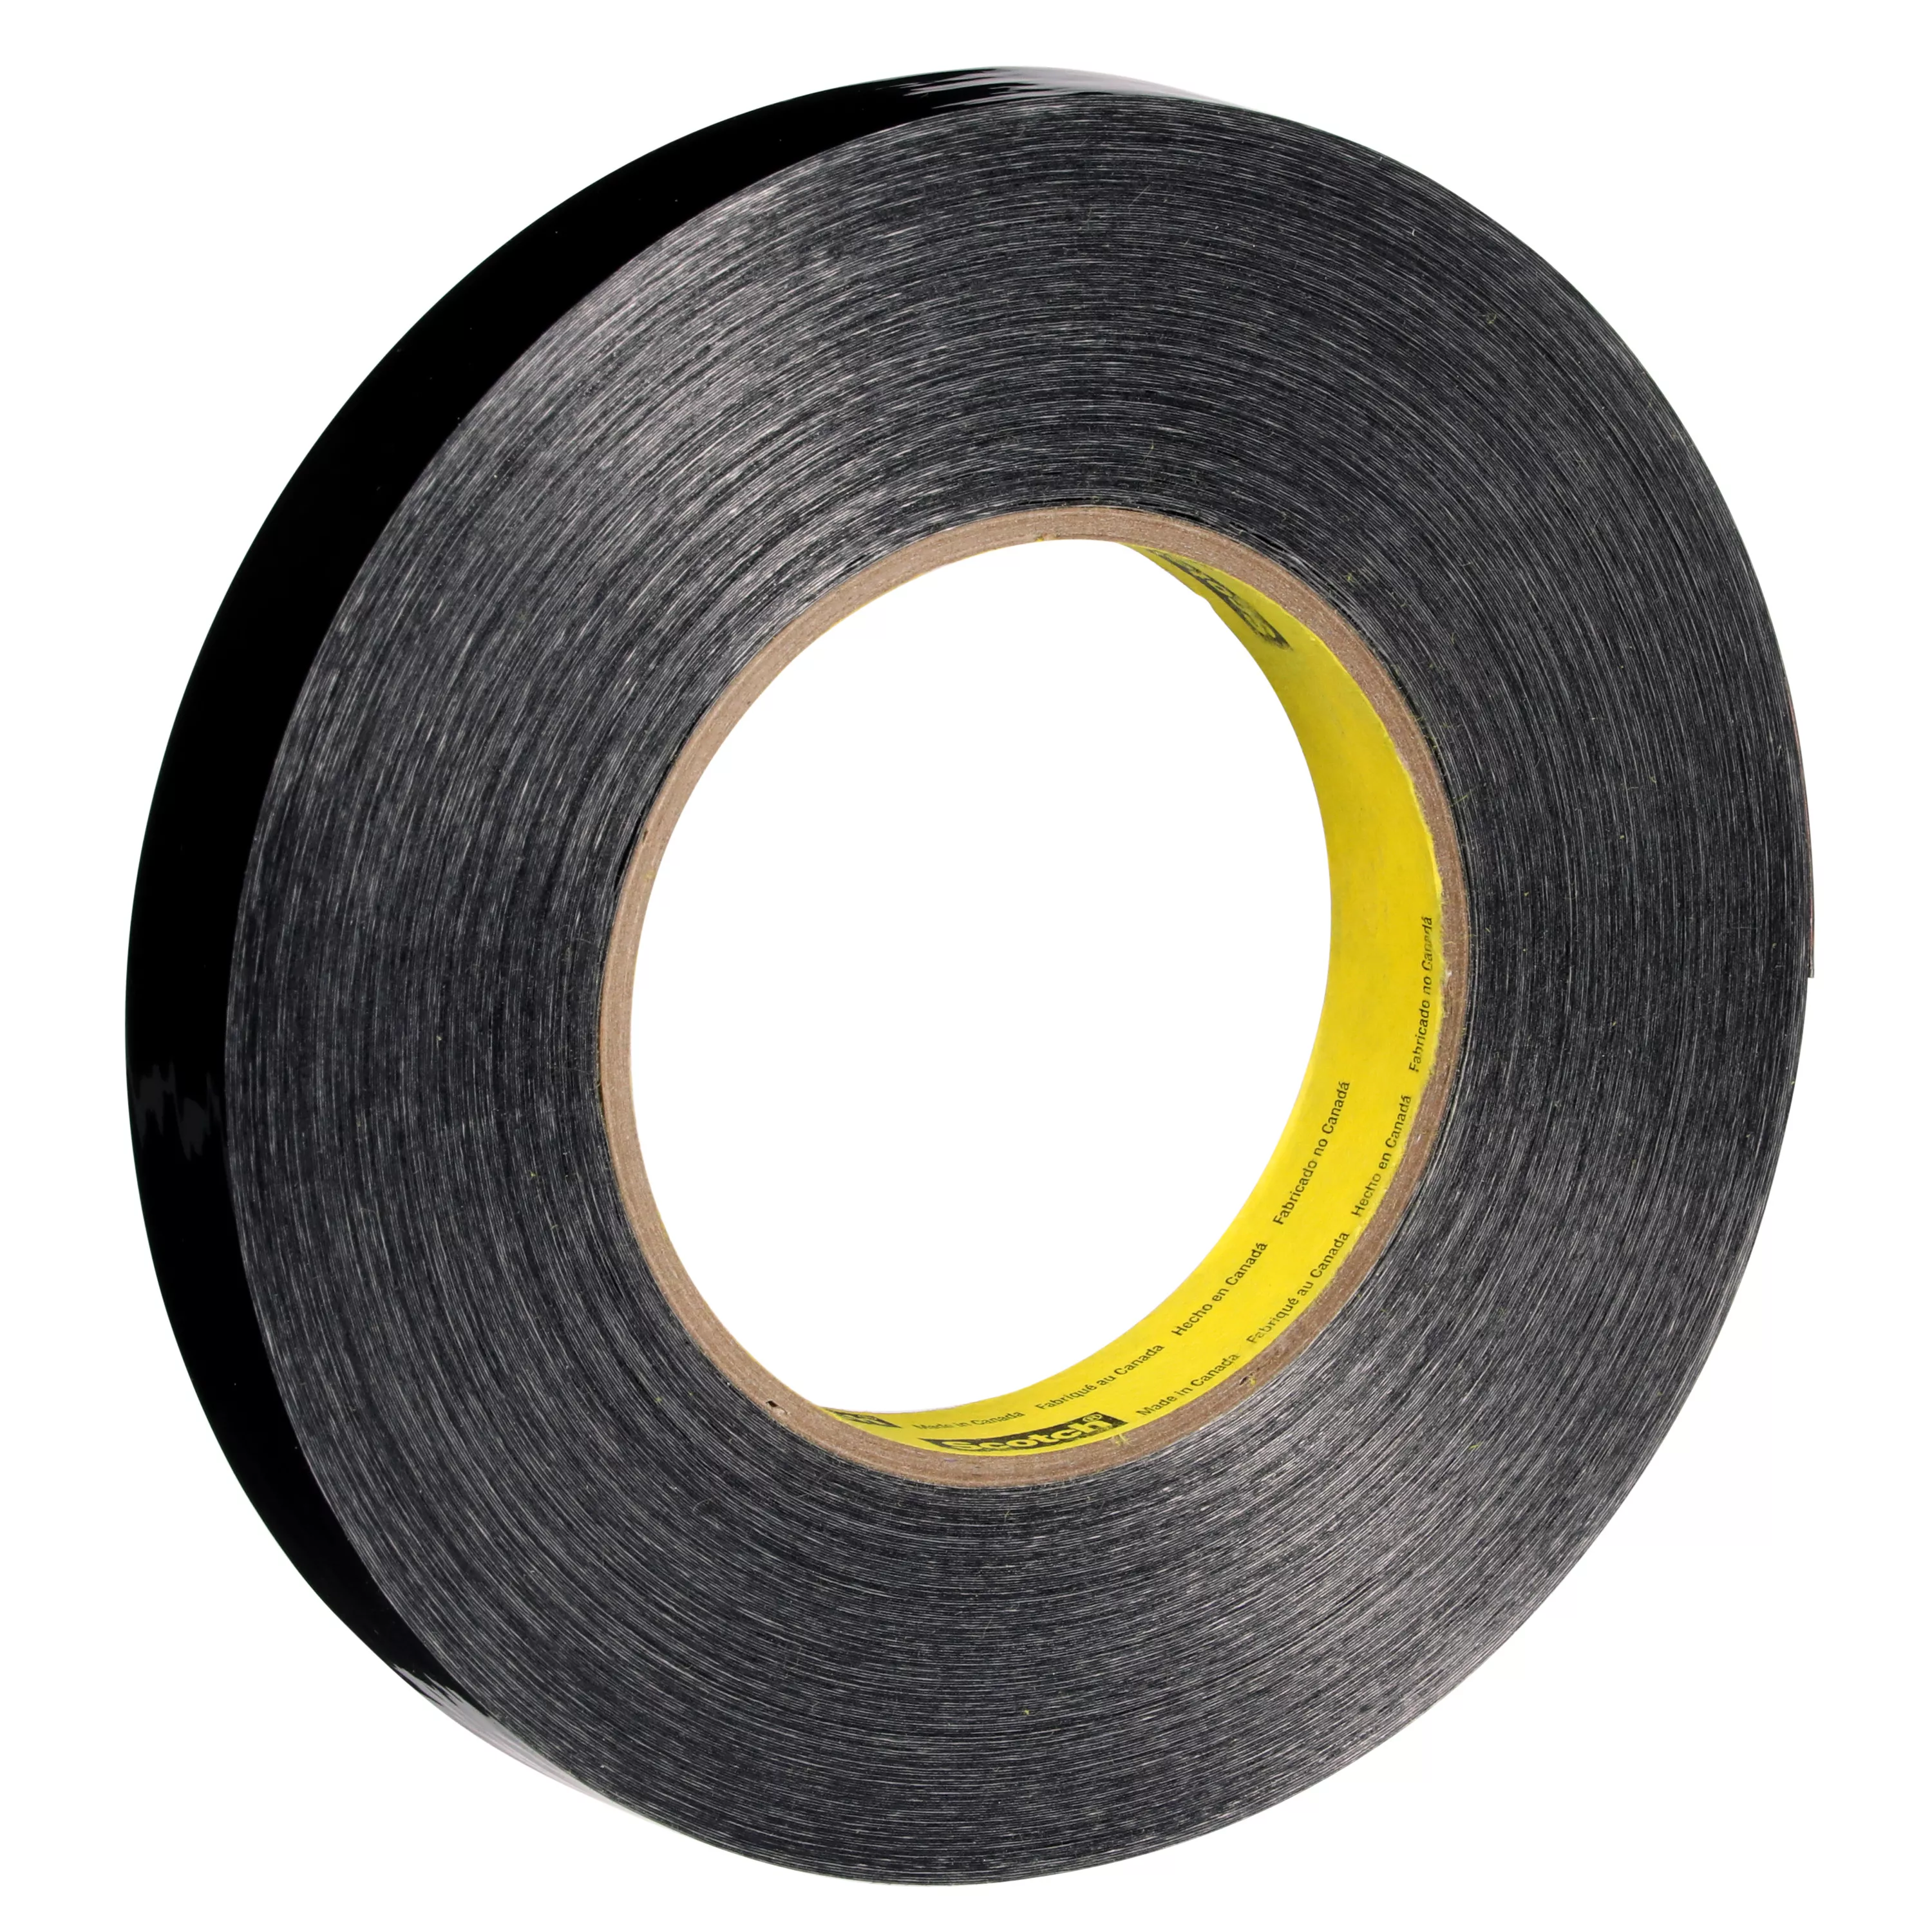 Scotch® Filament Tape 890MSR, Filament Tape BK, 18 mm x 55 m, 8 mil, 48
Roll/Case